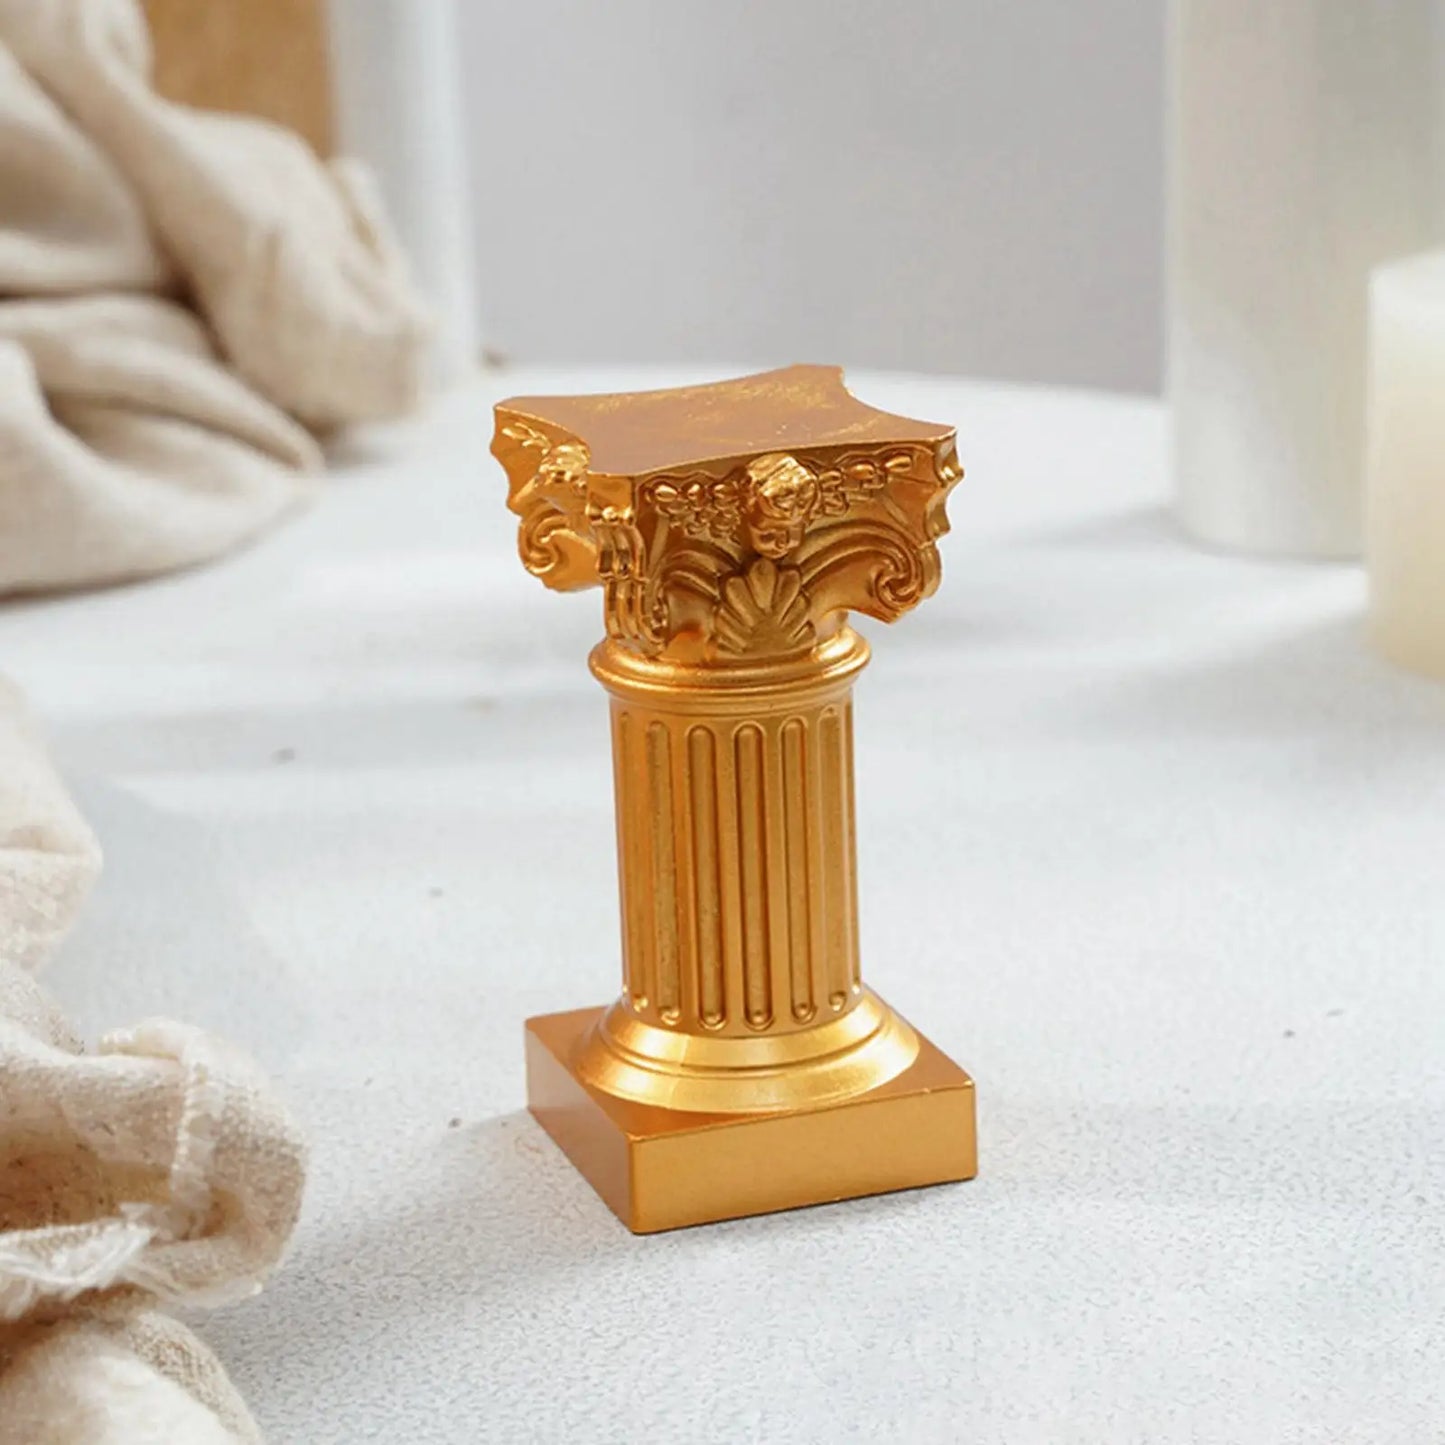 Pilier romain colonne grecque Statue piédestal chandelier support Figurine Sculpture intérieur maison salle à manger jardin paysage décor